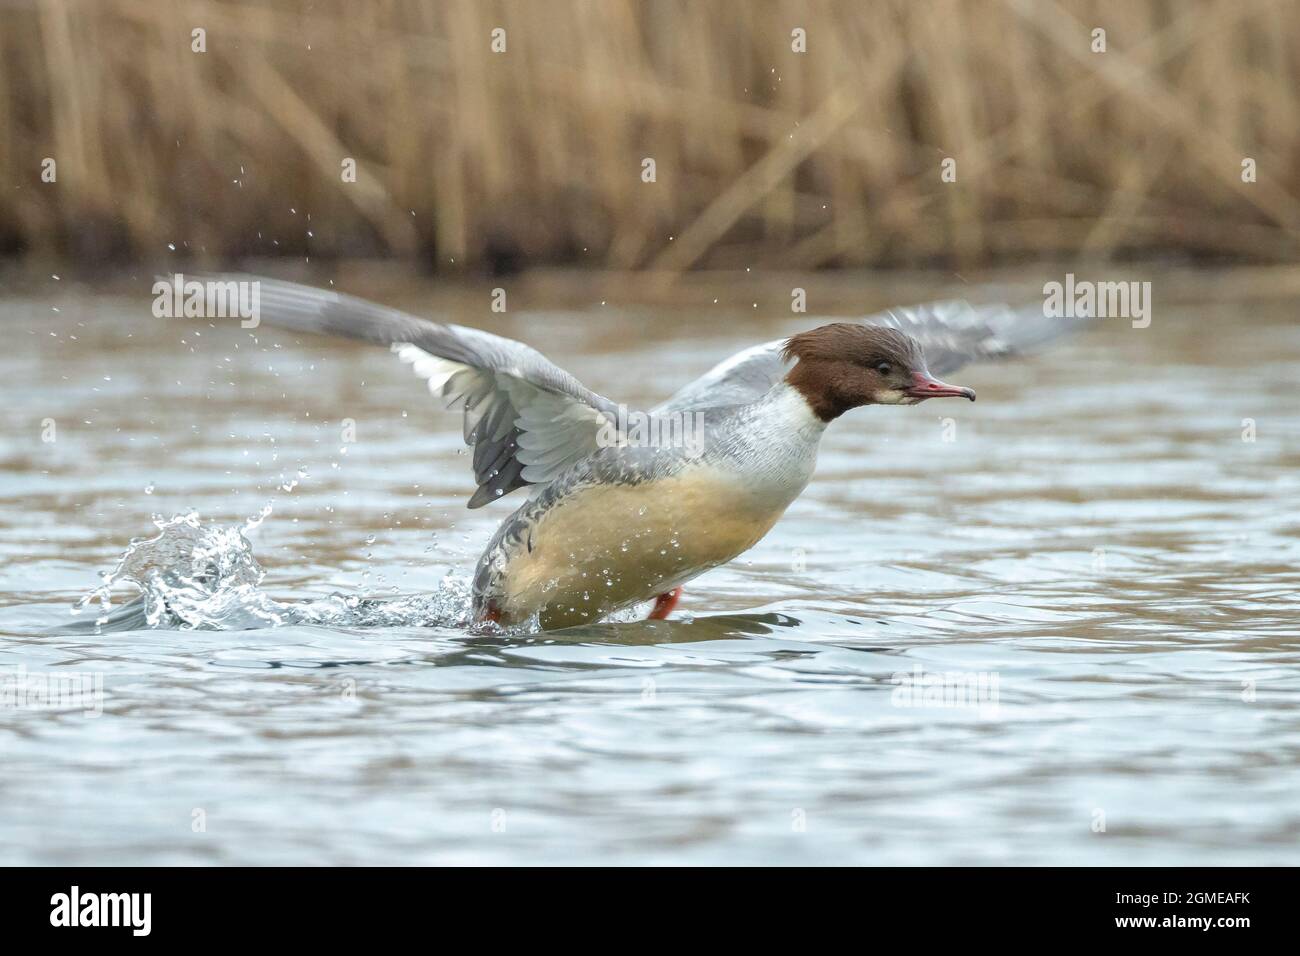 The common merganser or goosander male, Mergus merganser, swimming on the the water surface. Stock Photo